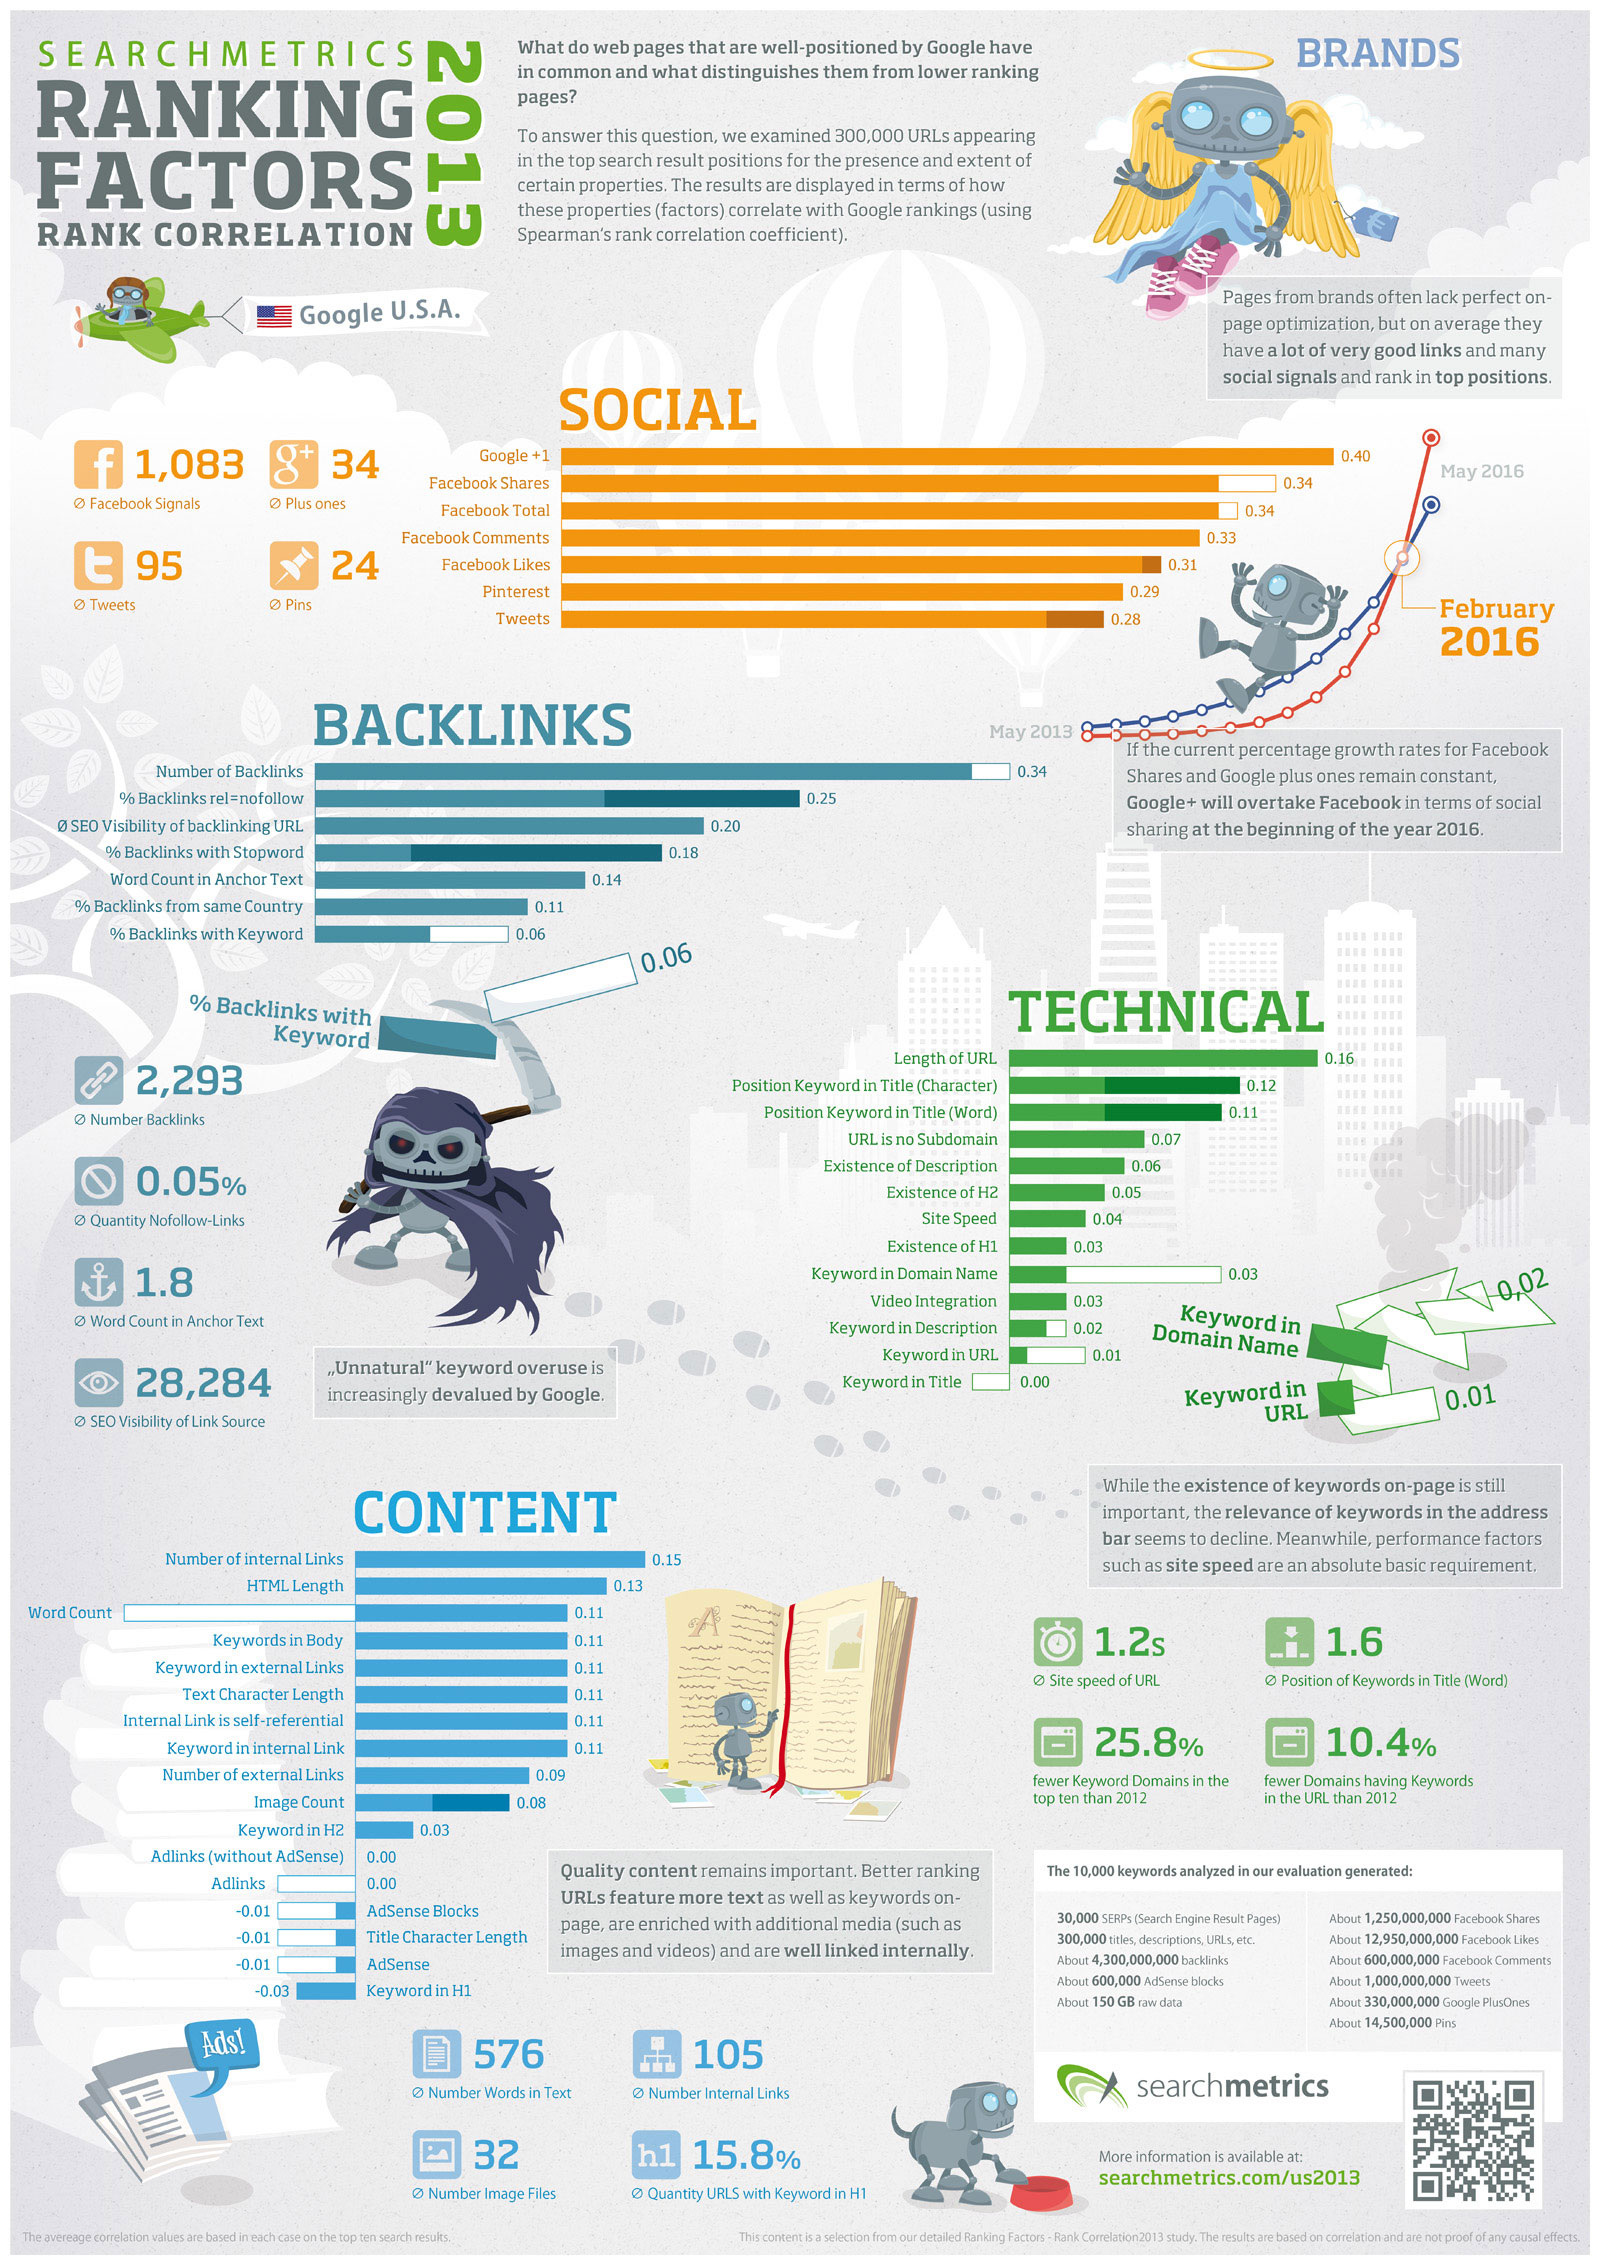 2013-seo-ranking-factors-infographic